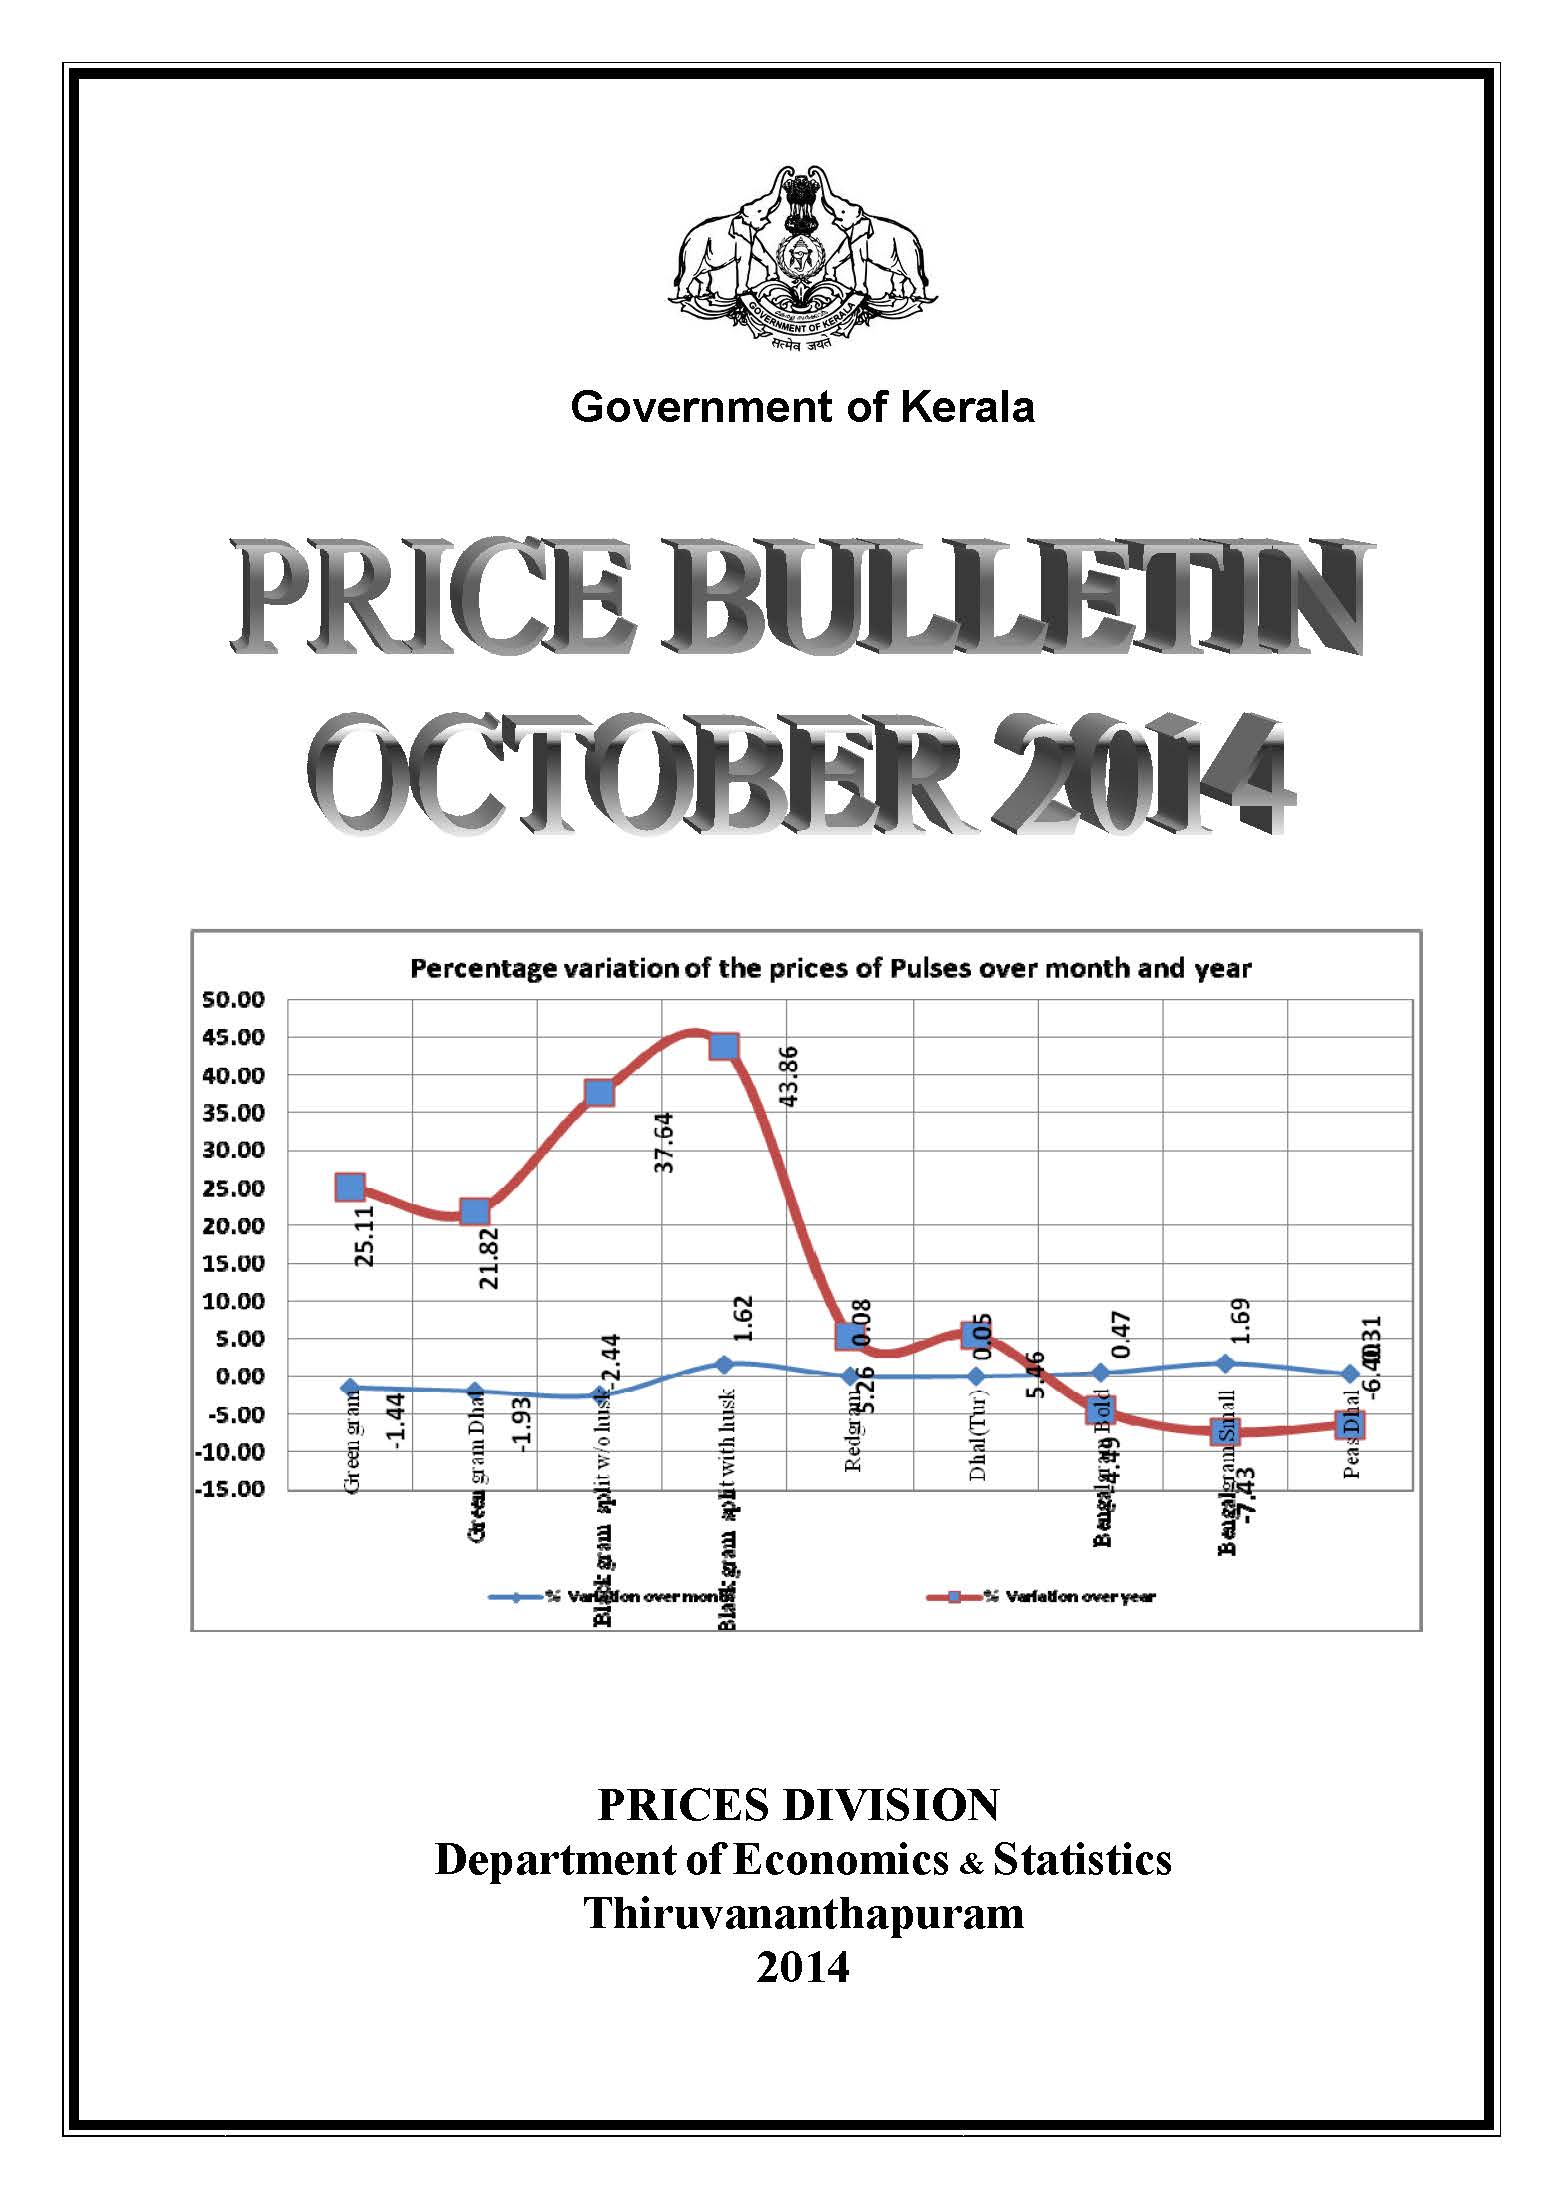 Price Bulletin October 2014